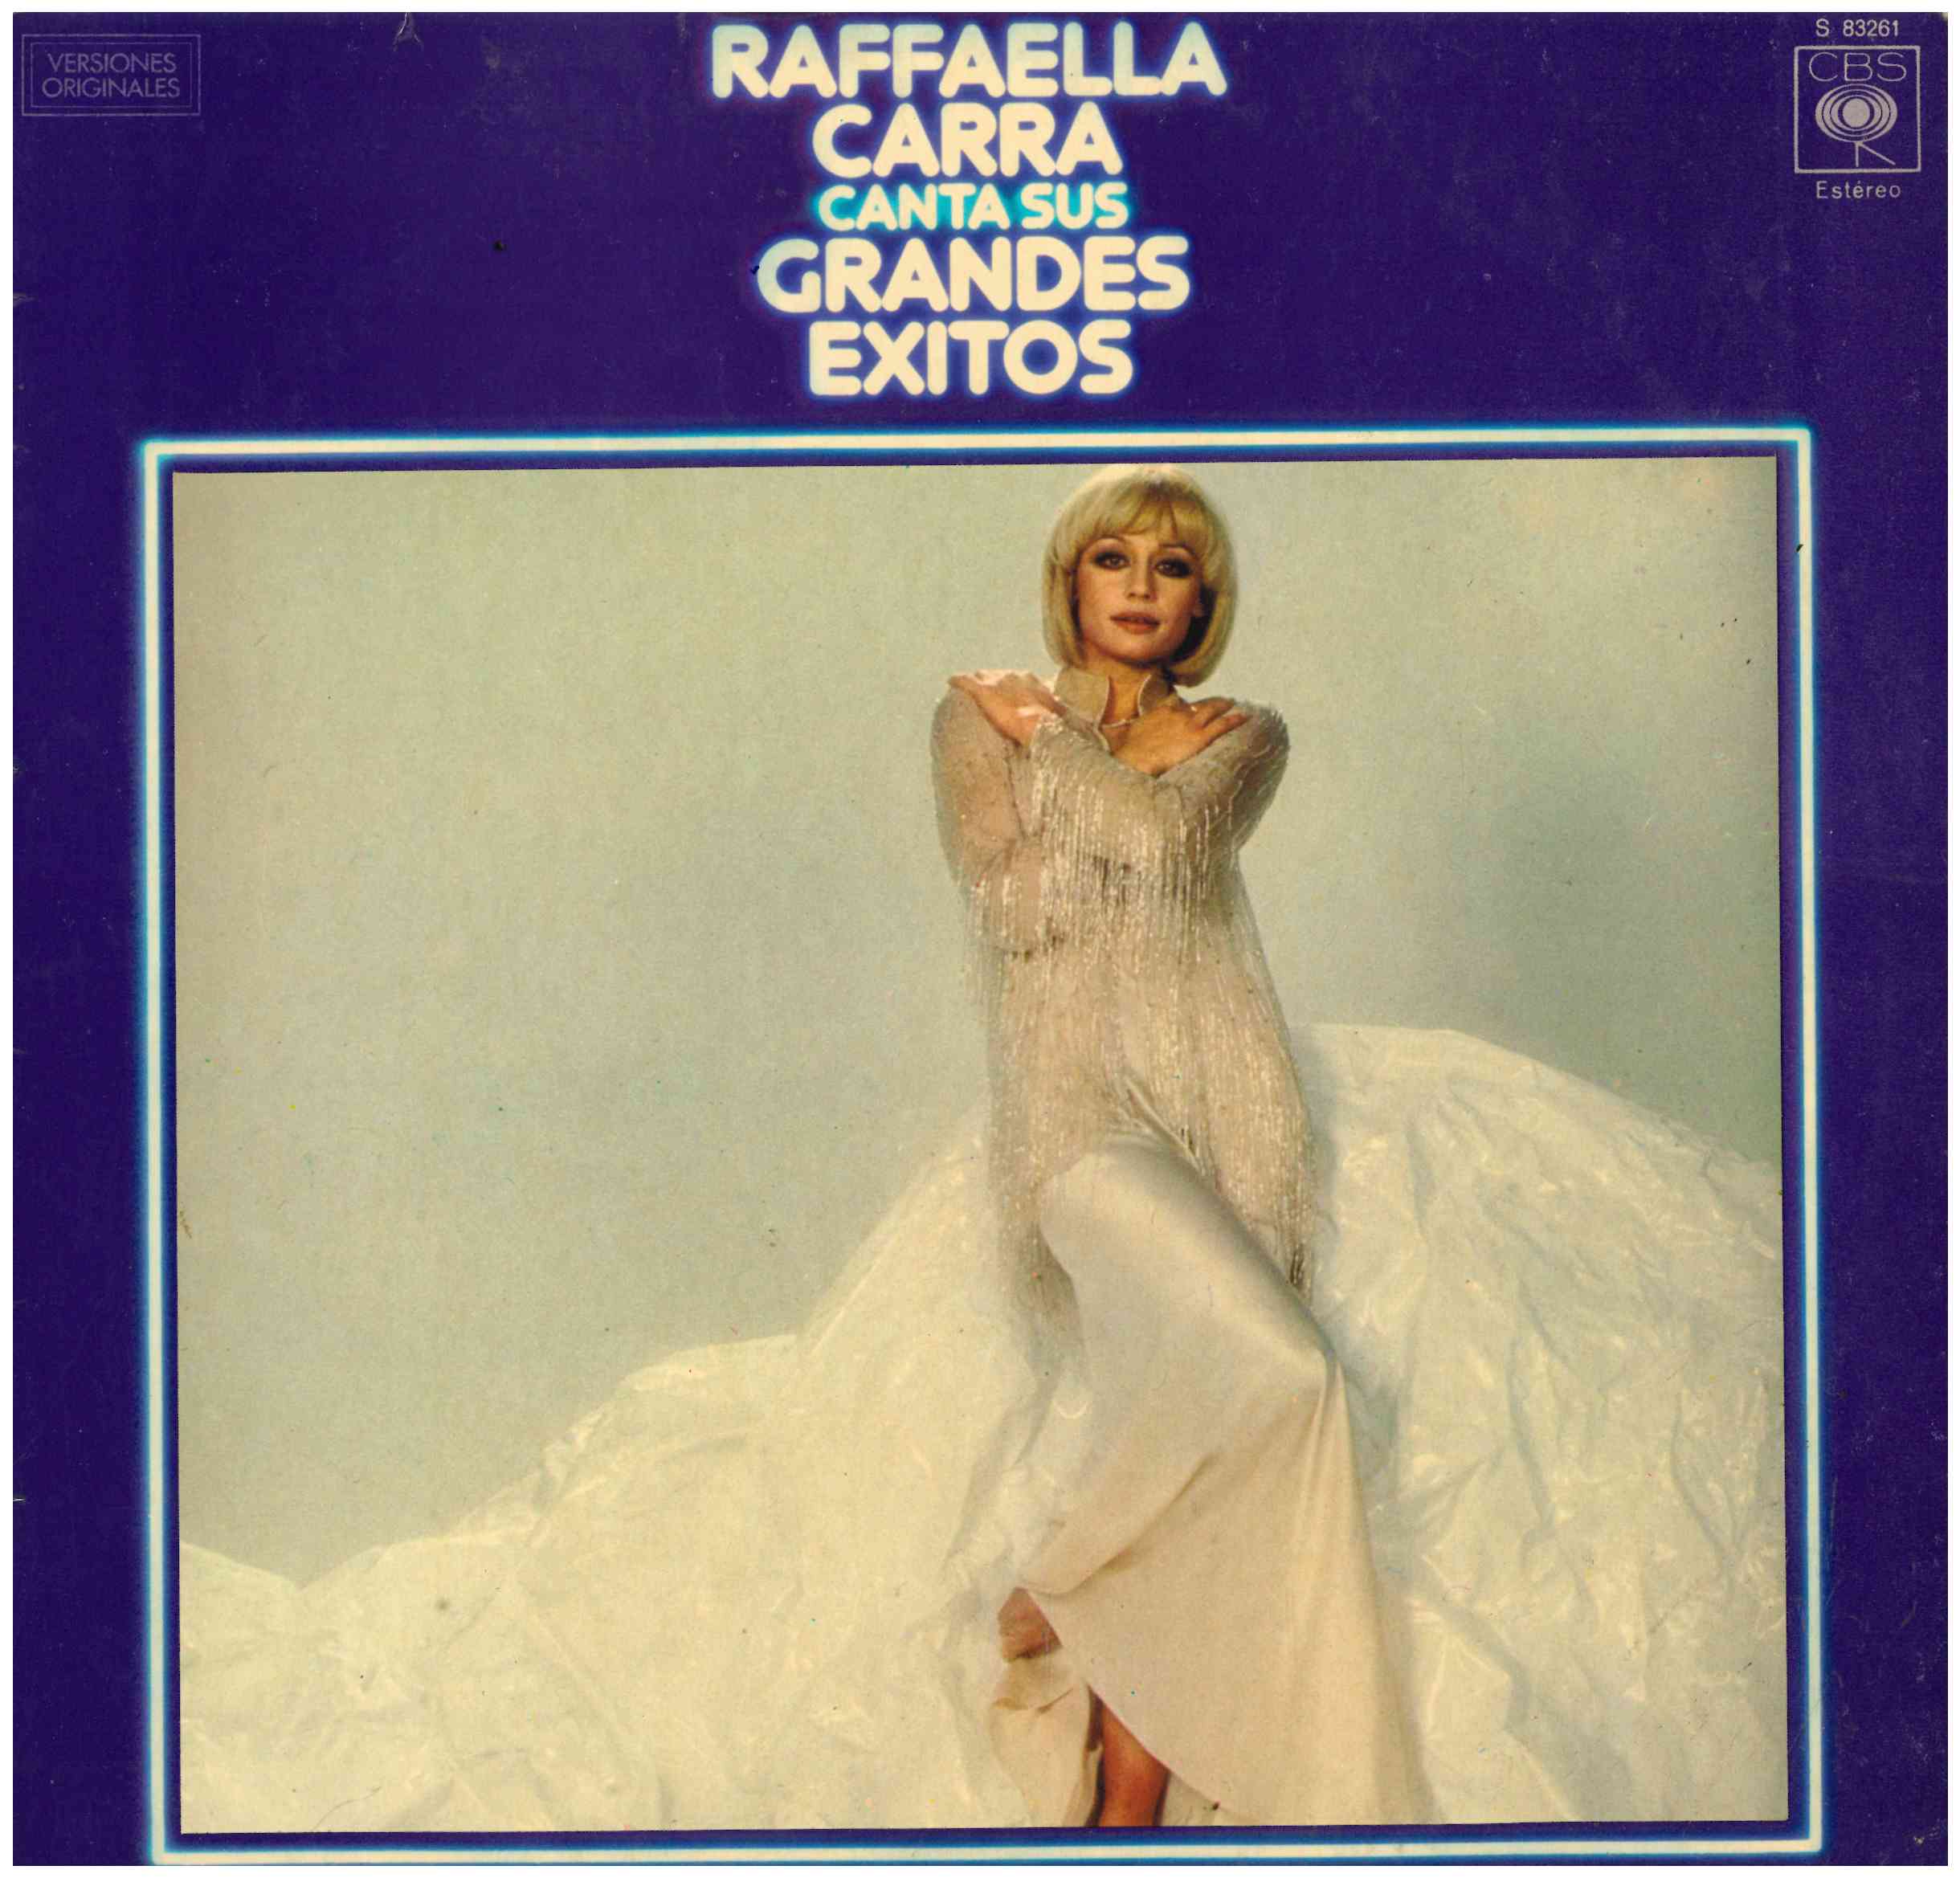 Rafaella Carrá. Canta sus grandes éxitos. CBS 1978 (S 83261)